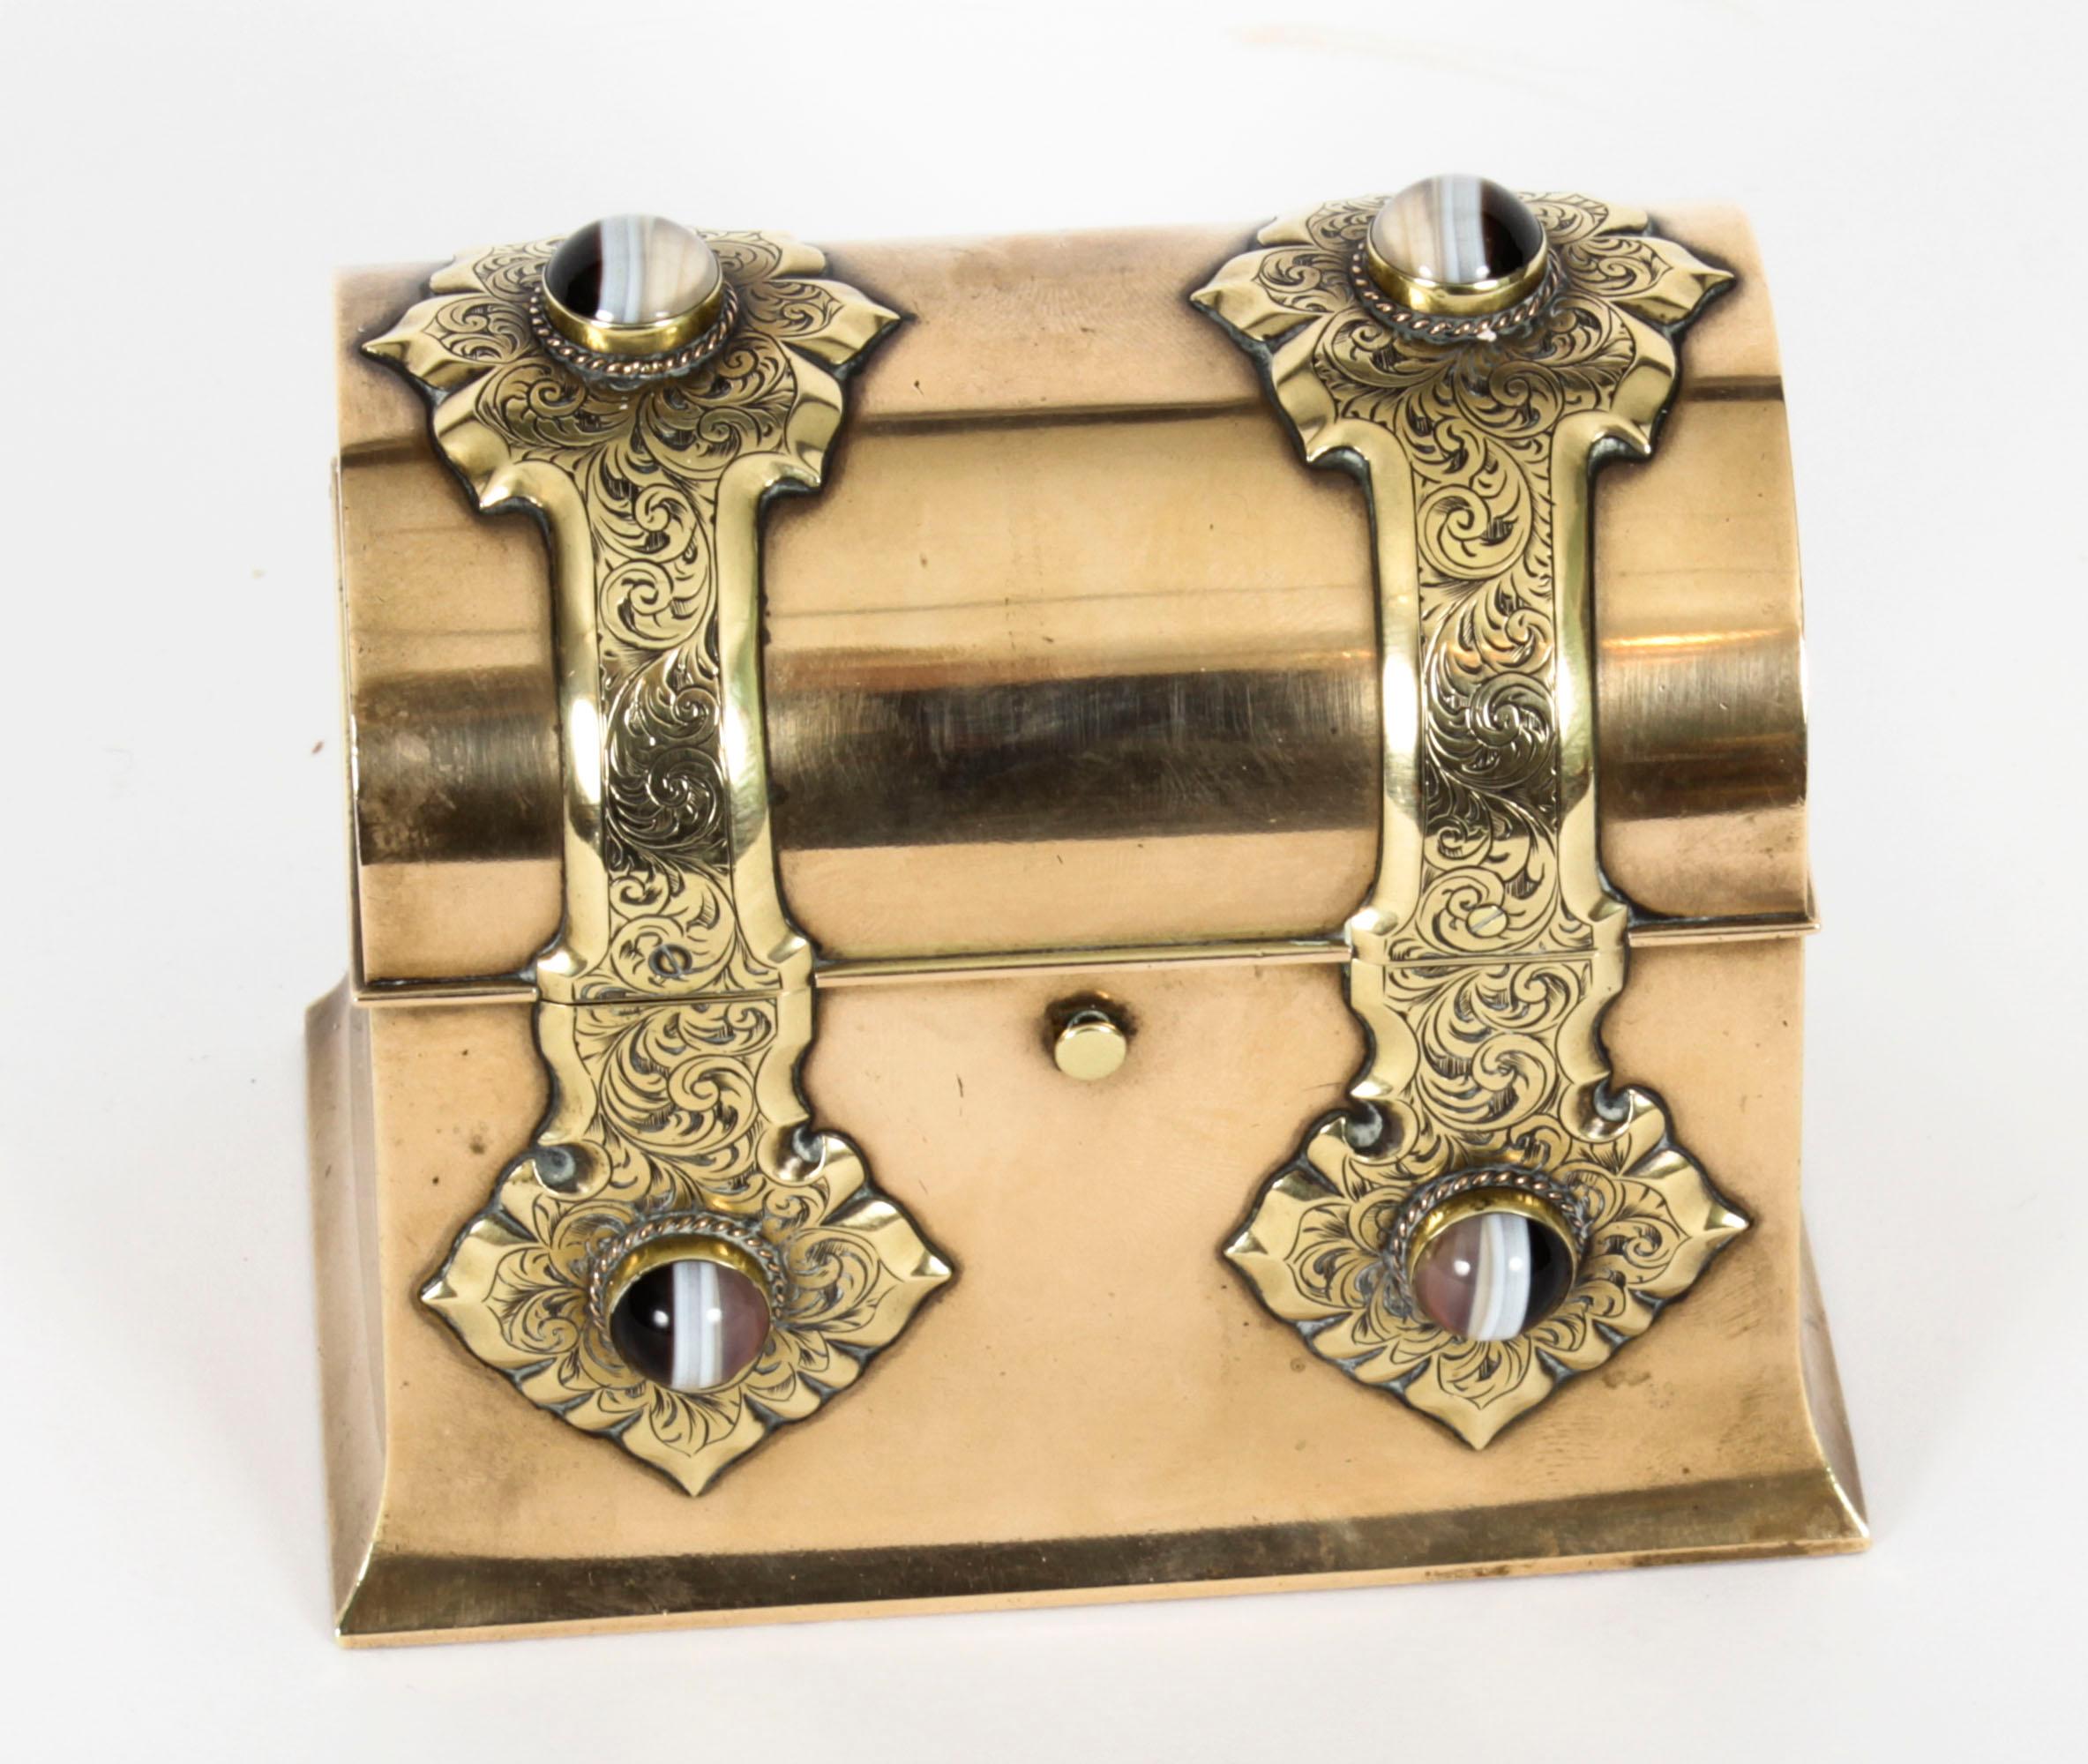 Il s'agit d'un superbe coffret ancien en bronze doré et agate monté par Asprey, datant d'environ 1870.
 
Le cercueil présente un contour rectangulaire avec un couvercle bombé qui s'ouvre pour révéler deux flacons de parfum en verre transparent.
